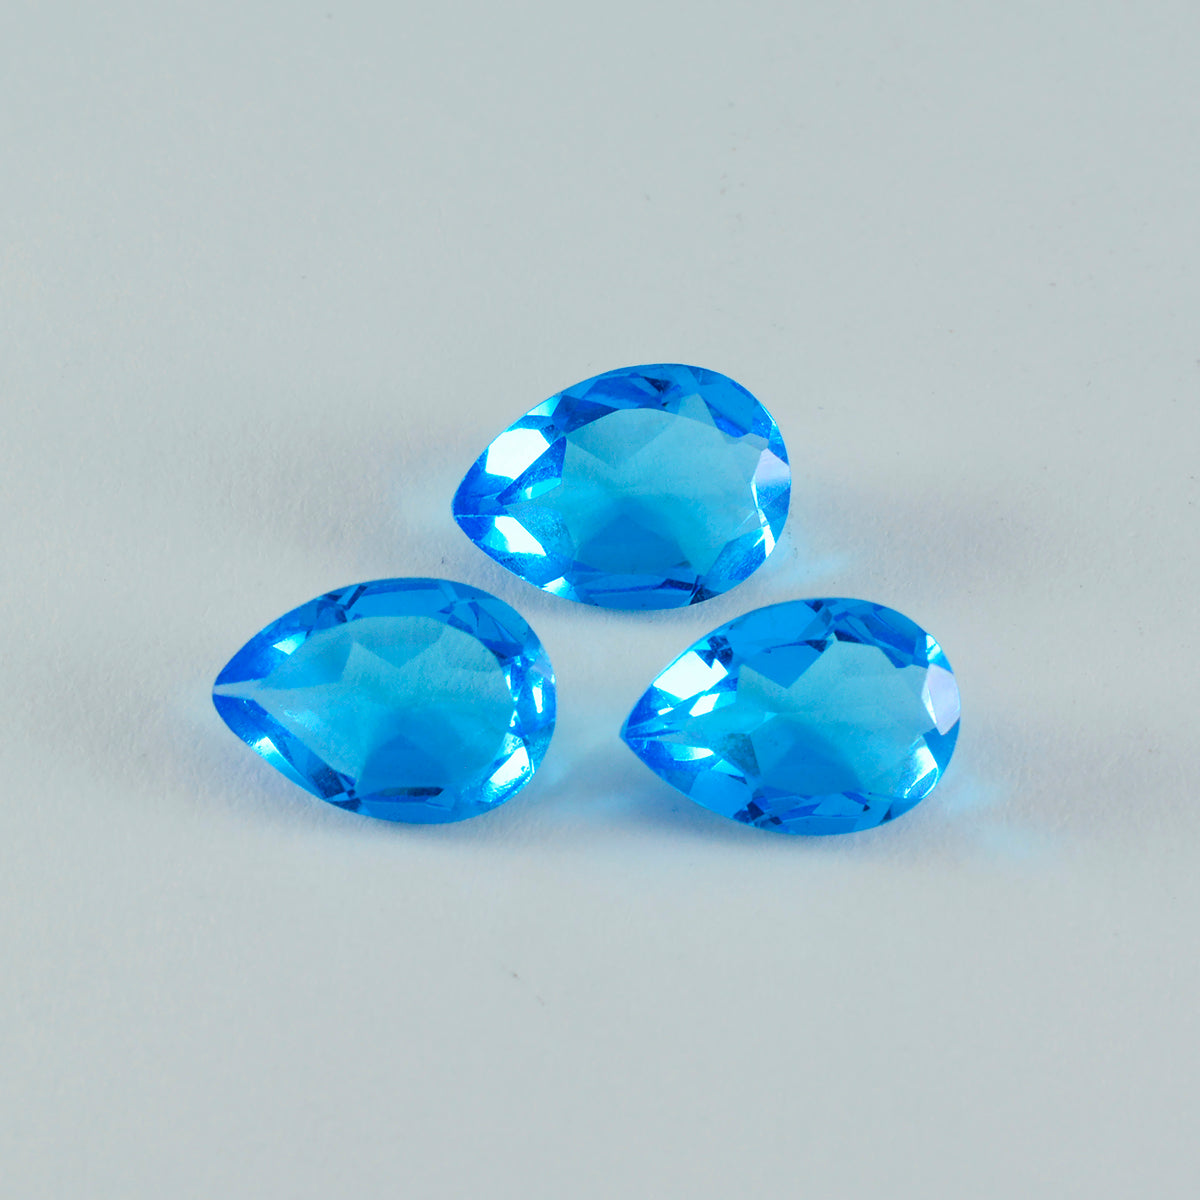 riyogems 1шт голубой топаз cz ограненный 12x16 мм драгоценный камень грушевидной формы поразительного качества